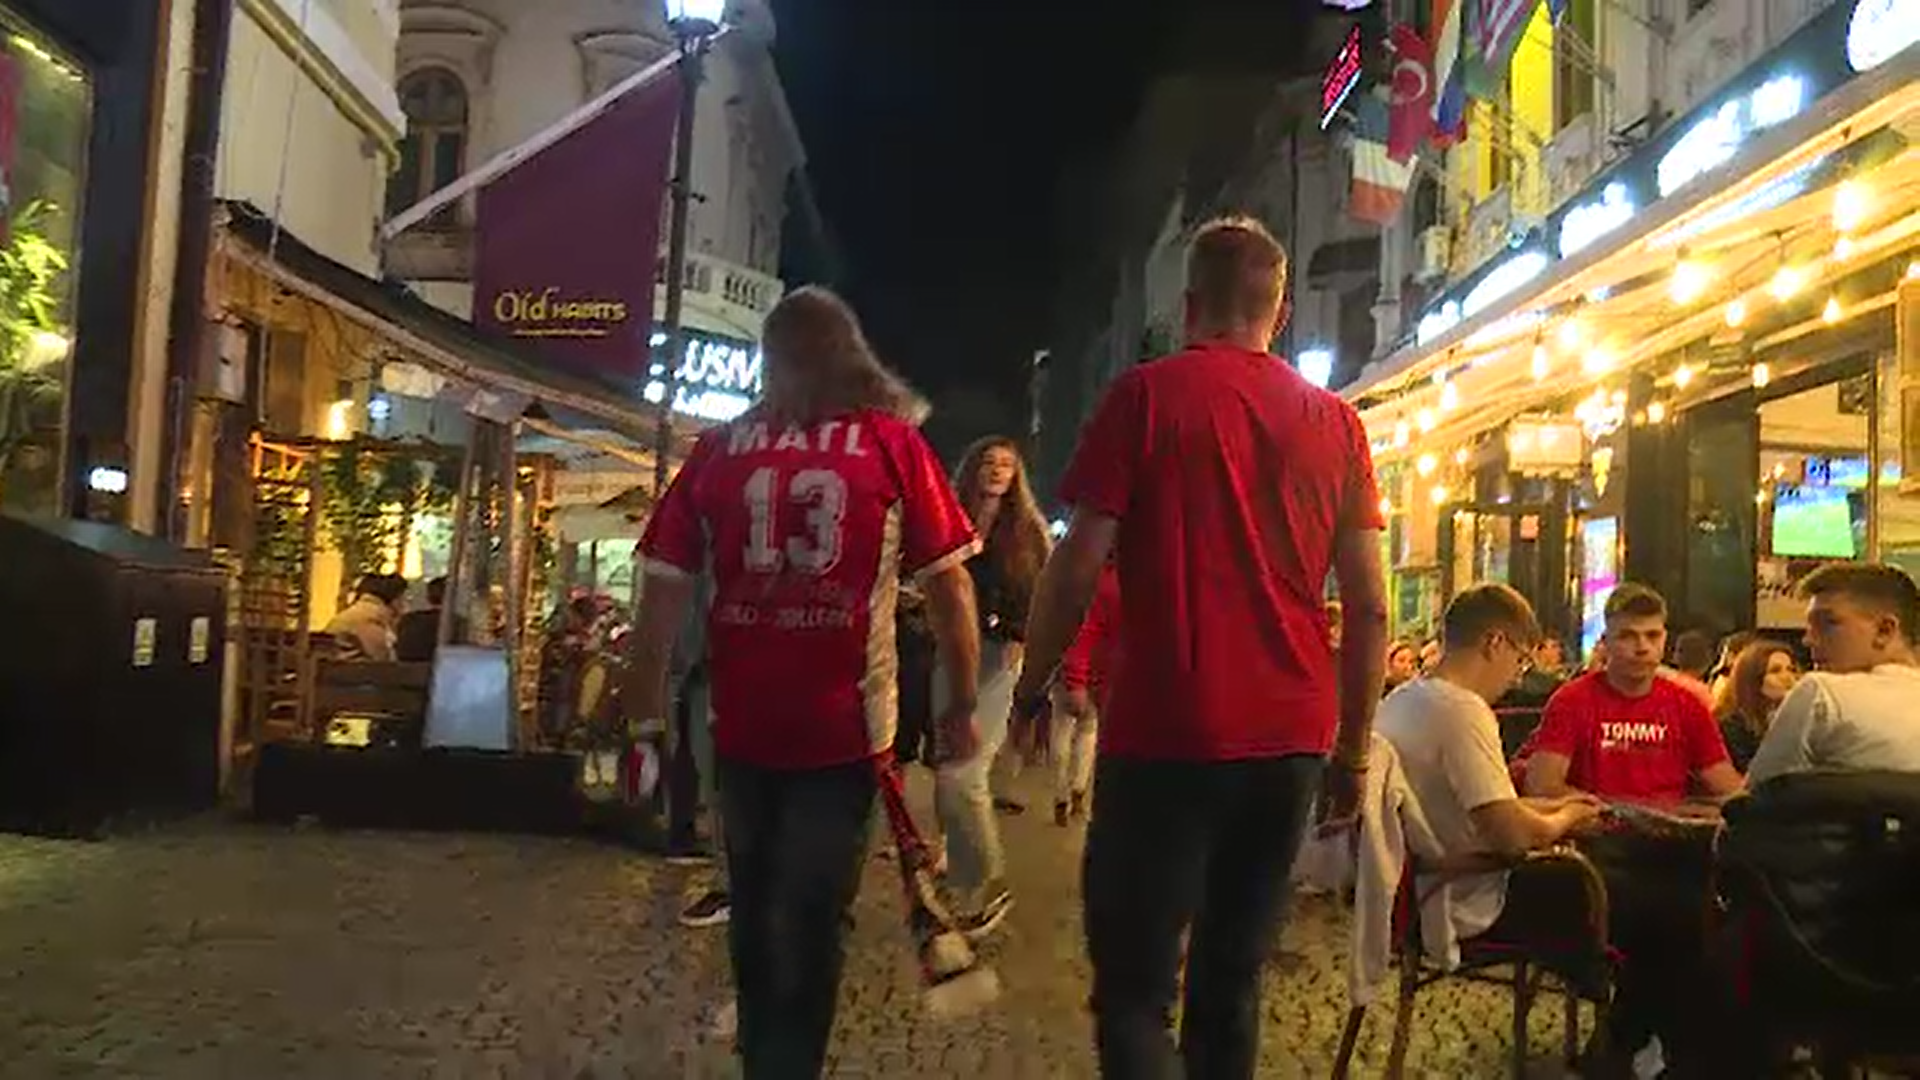 EURO 2020. Suporterii străini, încântați de Centrul Vechi: ”Minunată viața de noapte, bere bună”